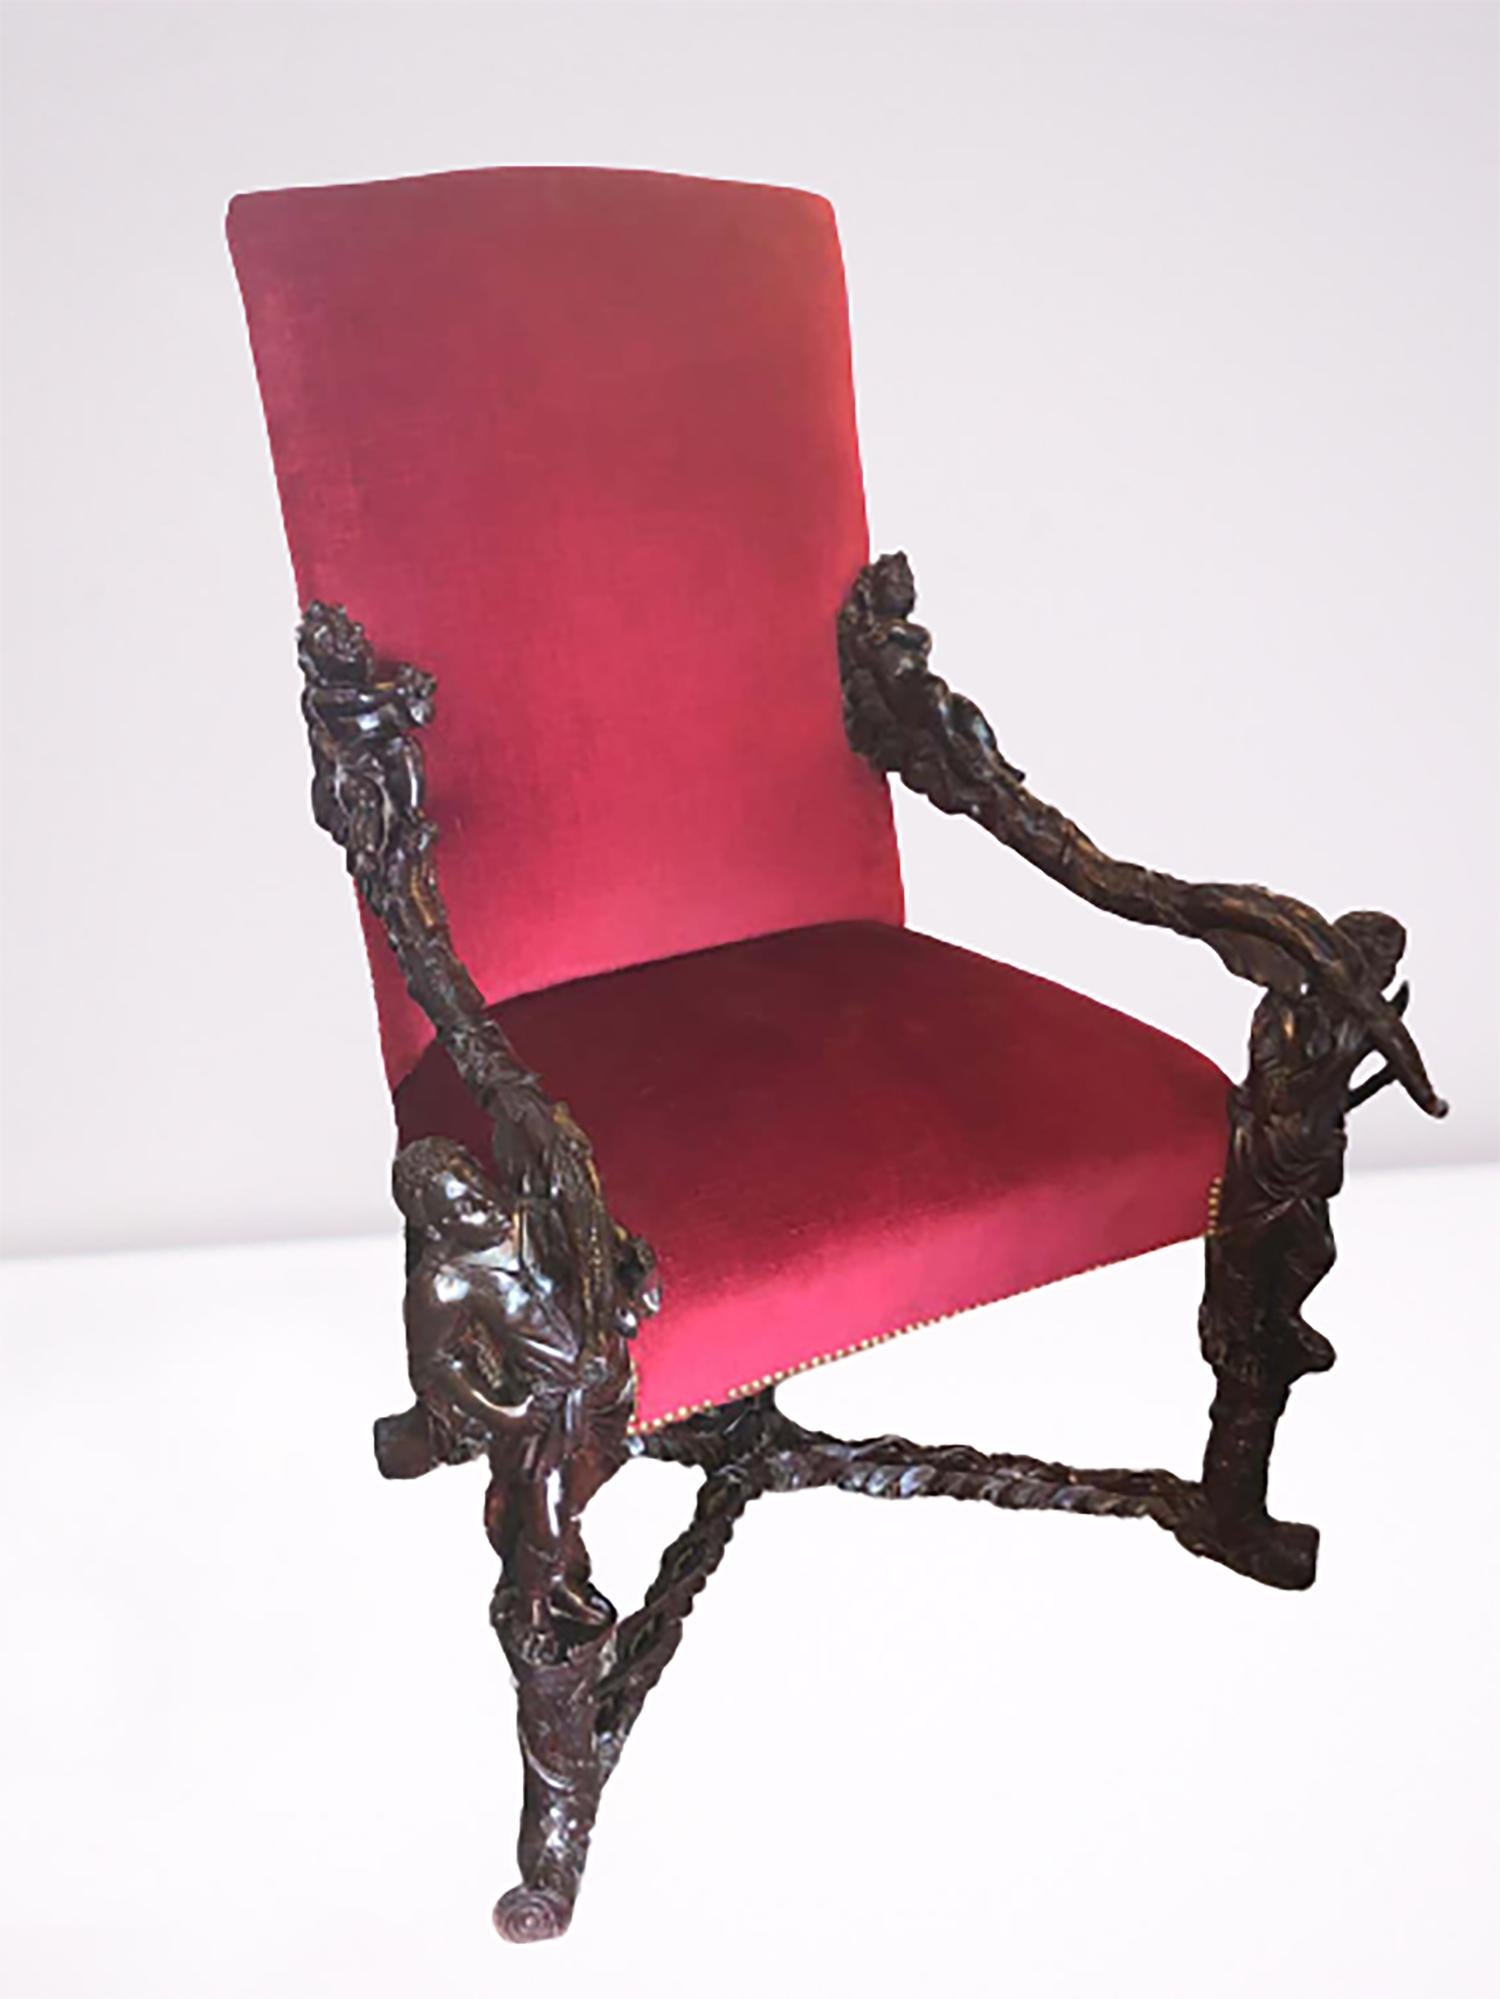 Paire de fauteuils trône baroques italiens du 19e siècle, sculptés et à accoudoirs. La paire avec des sculptures figuratives et des putti endormis sur des lits de feuilles, attribuée à Valentino Panciera Besarel (Venise, 1829-1902) à la manière